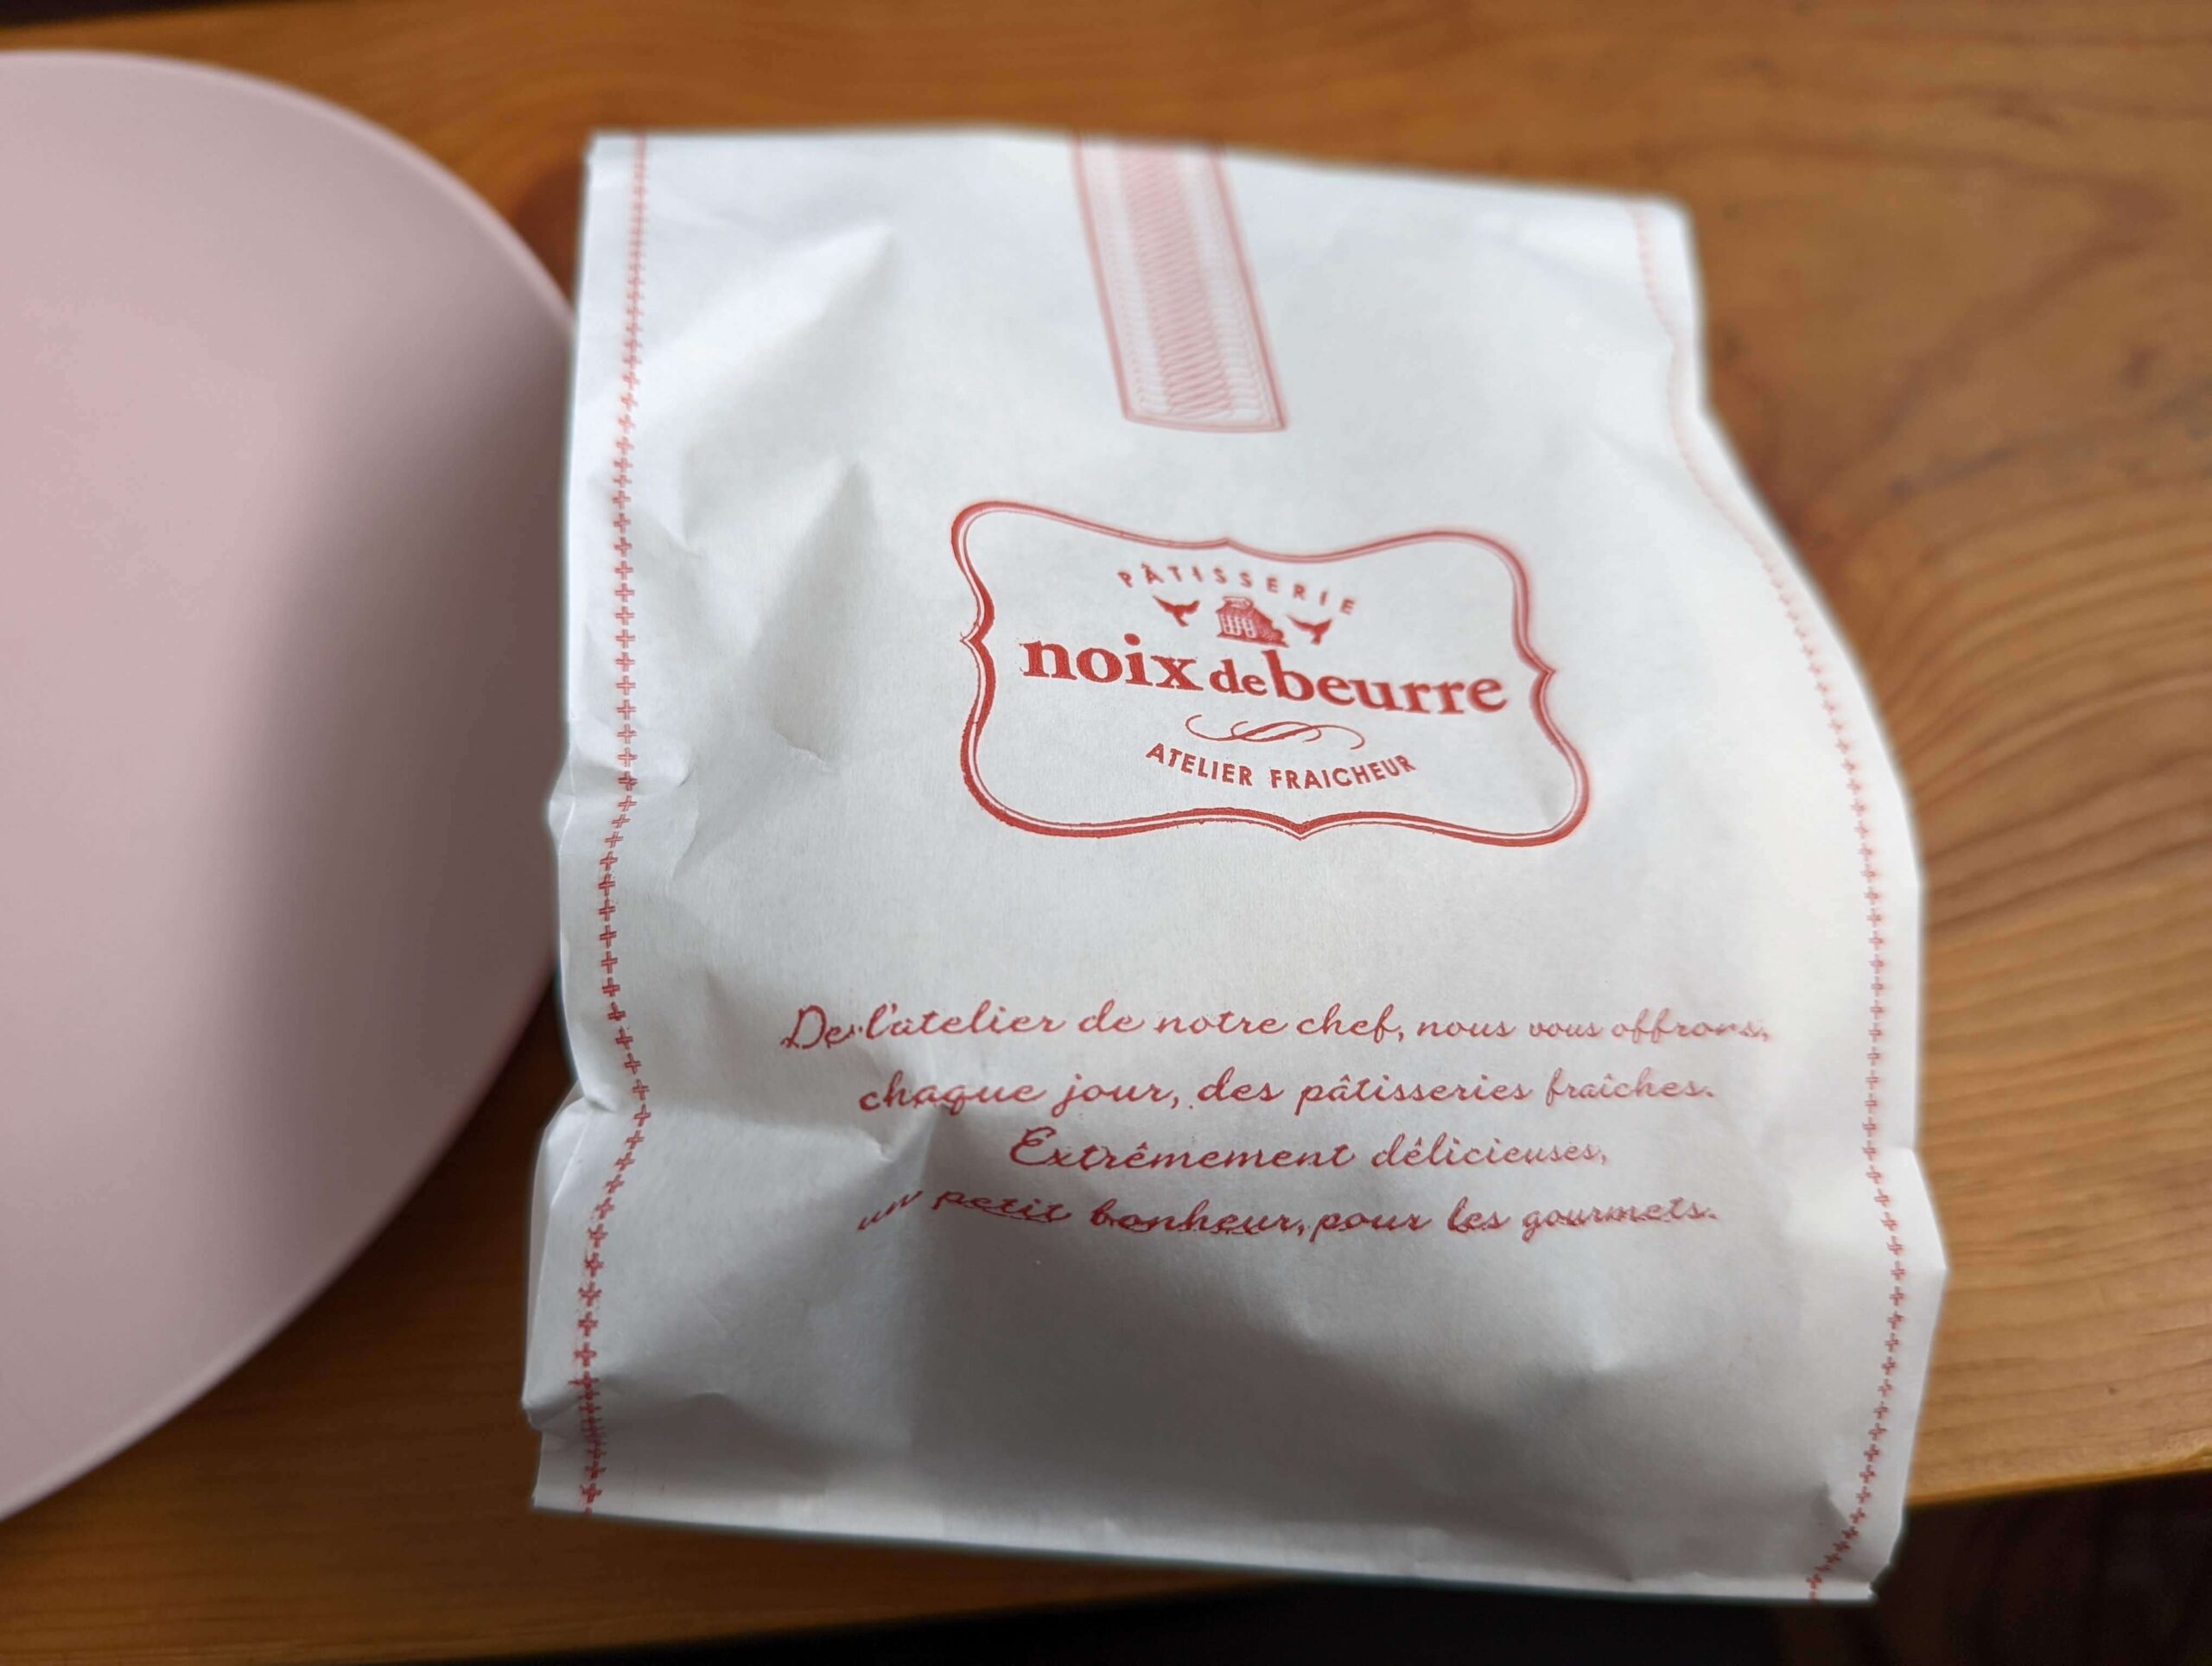 noix de beurre（ノワドゥブール）の焼き菓子 (フィナンシェとプティクグロフ）